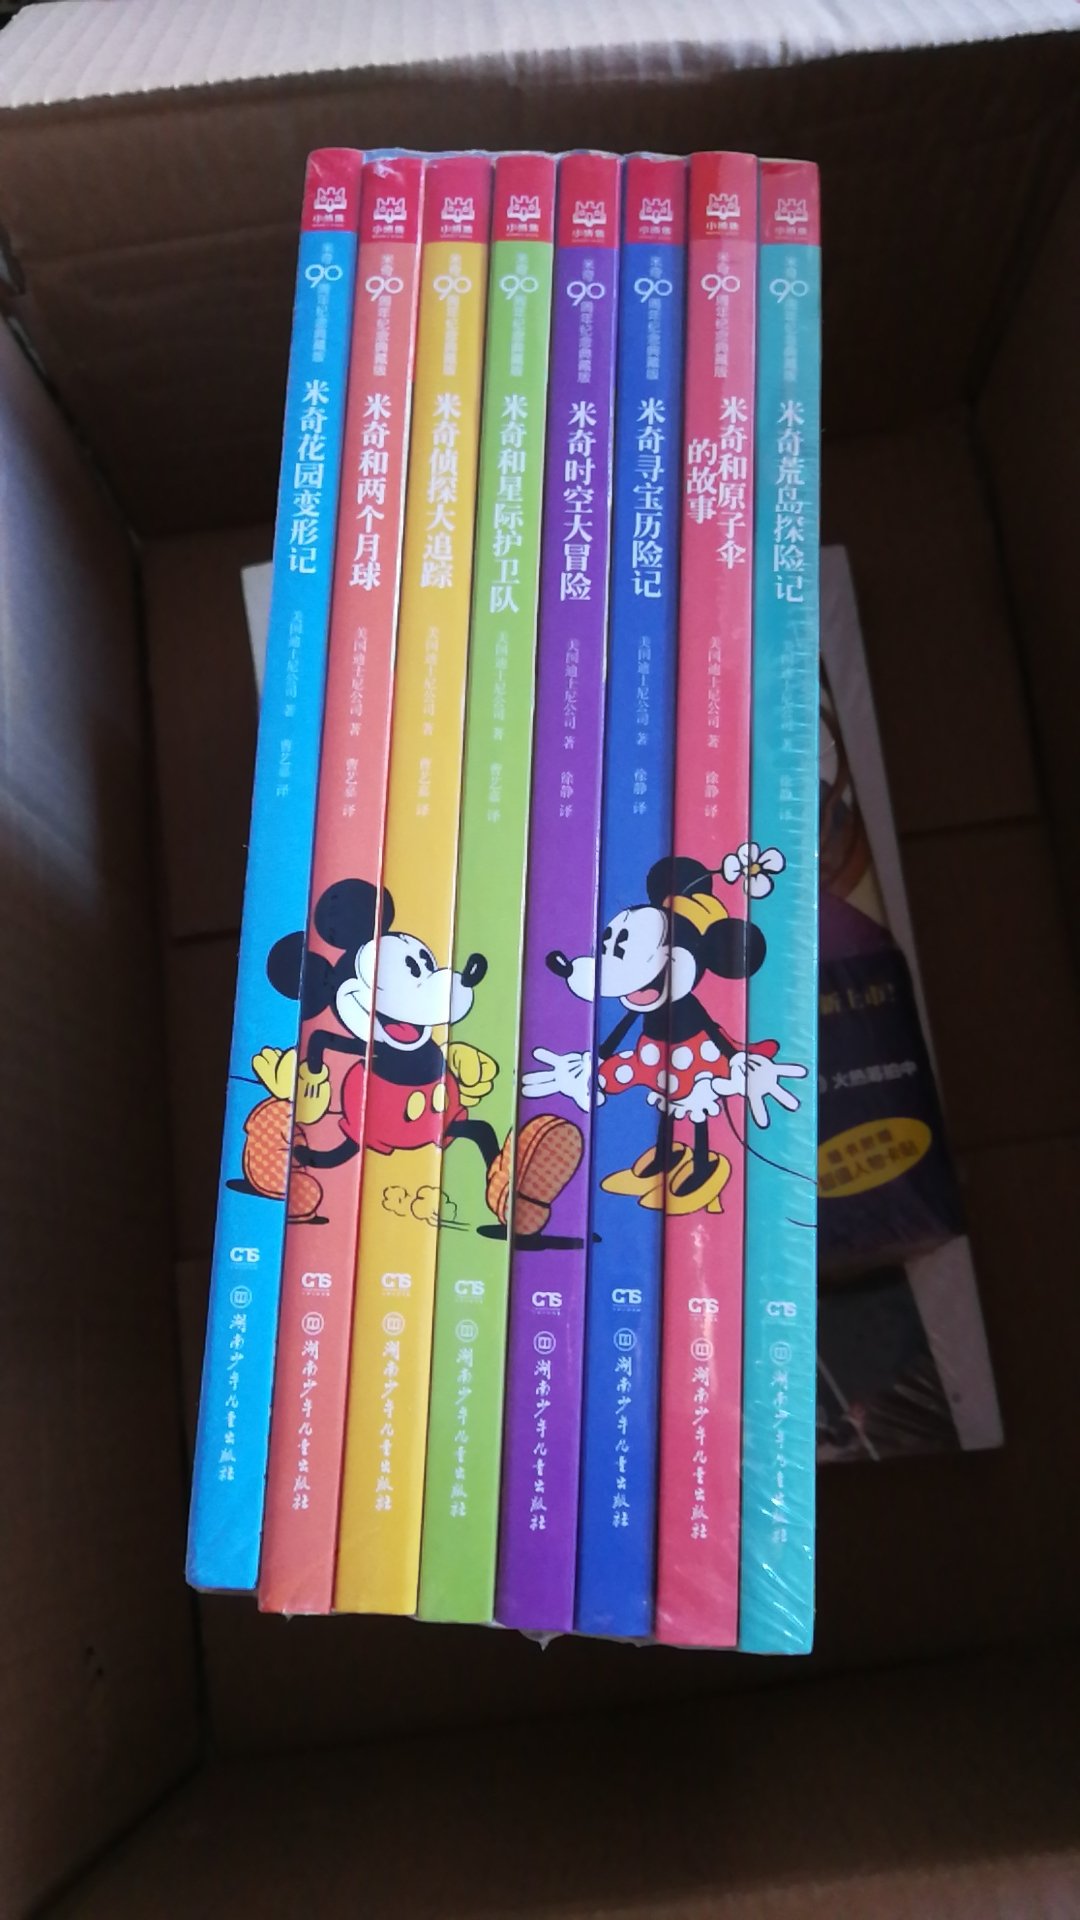 经典米老鼠漫画，书不错，是胶版纸印刷的，作为经典漫画收藏一套，就是价格太贵了啊。